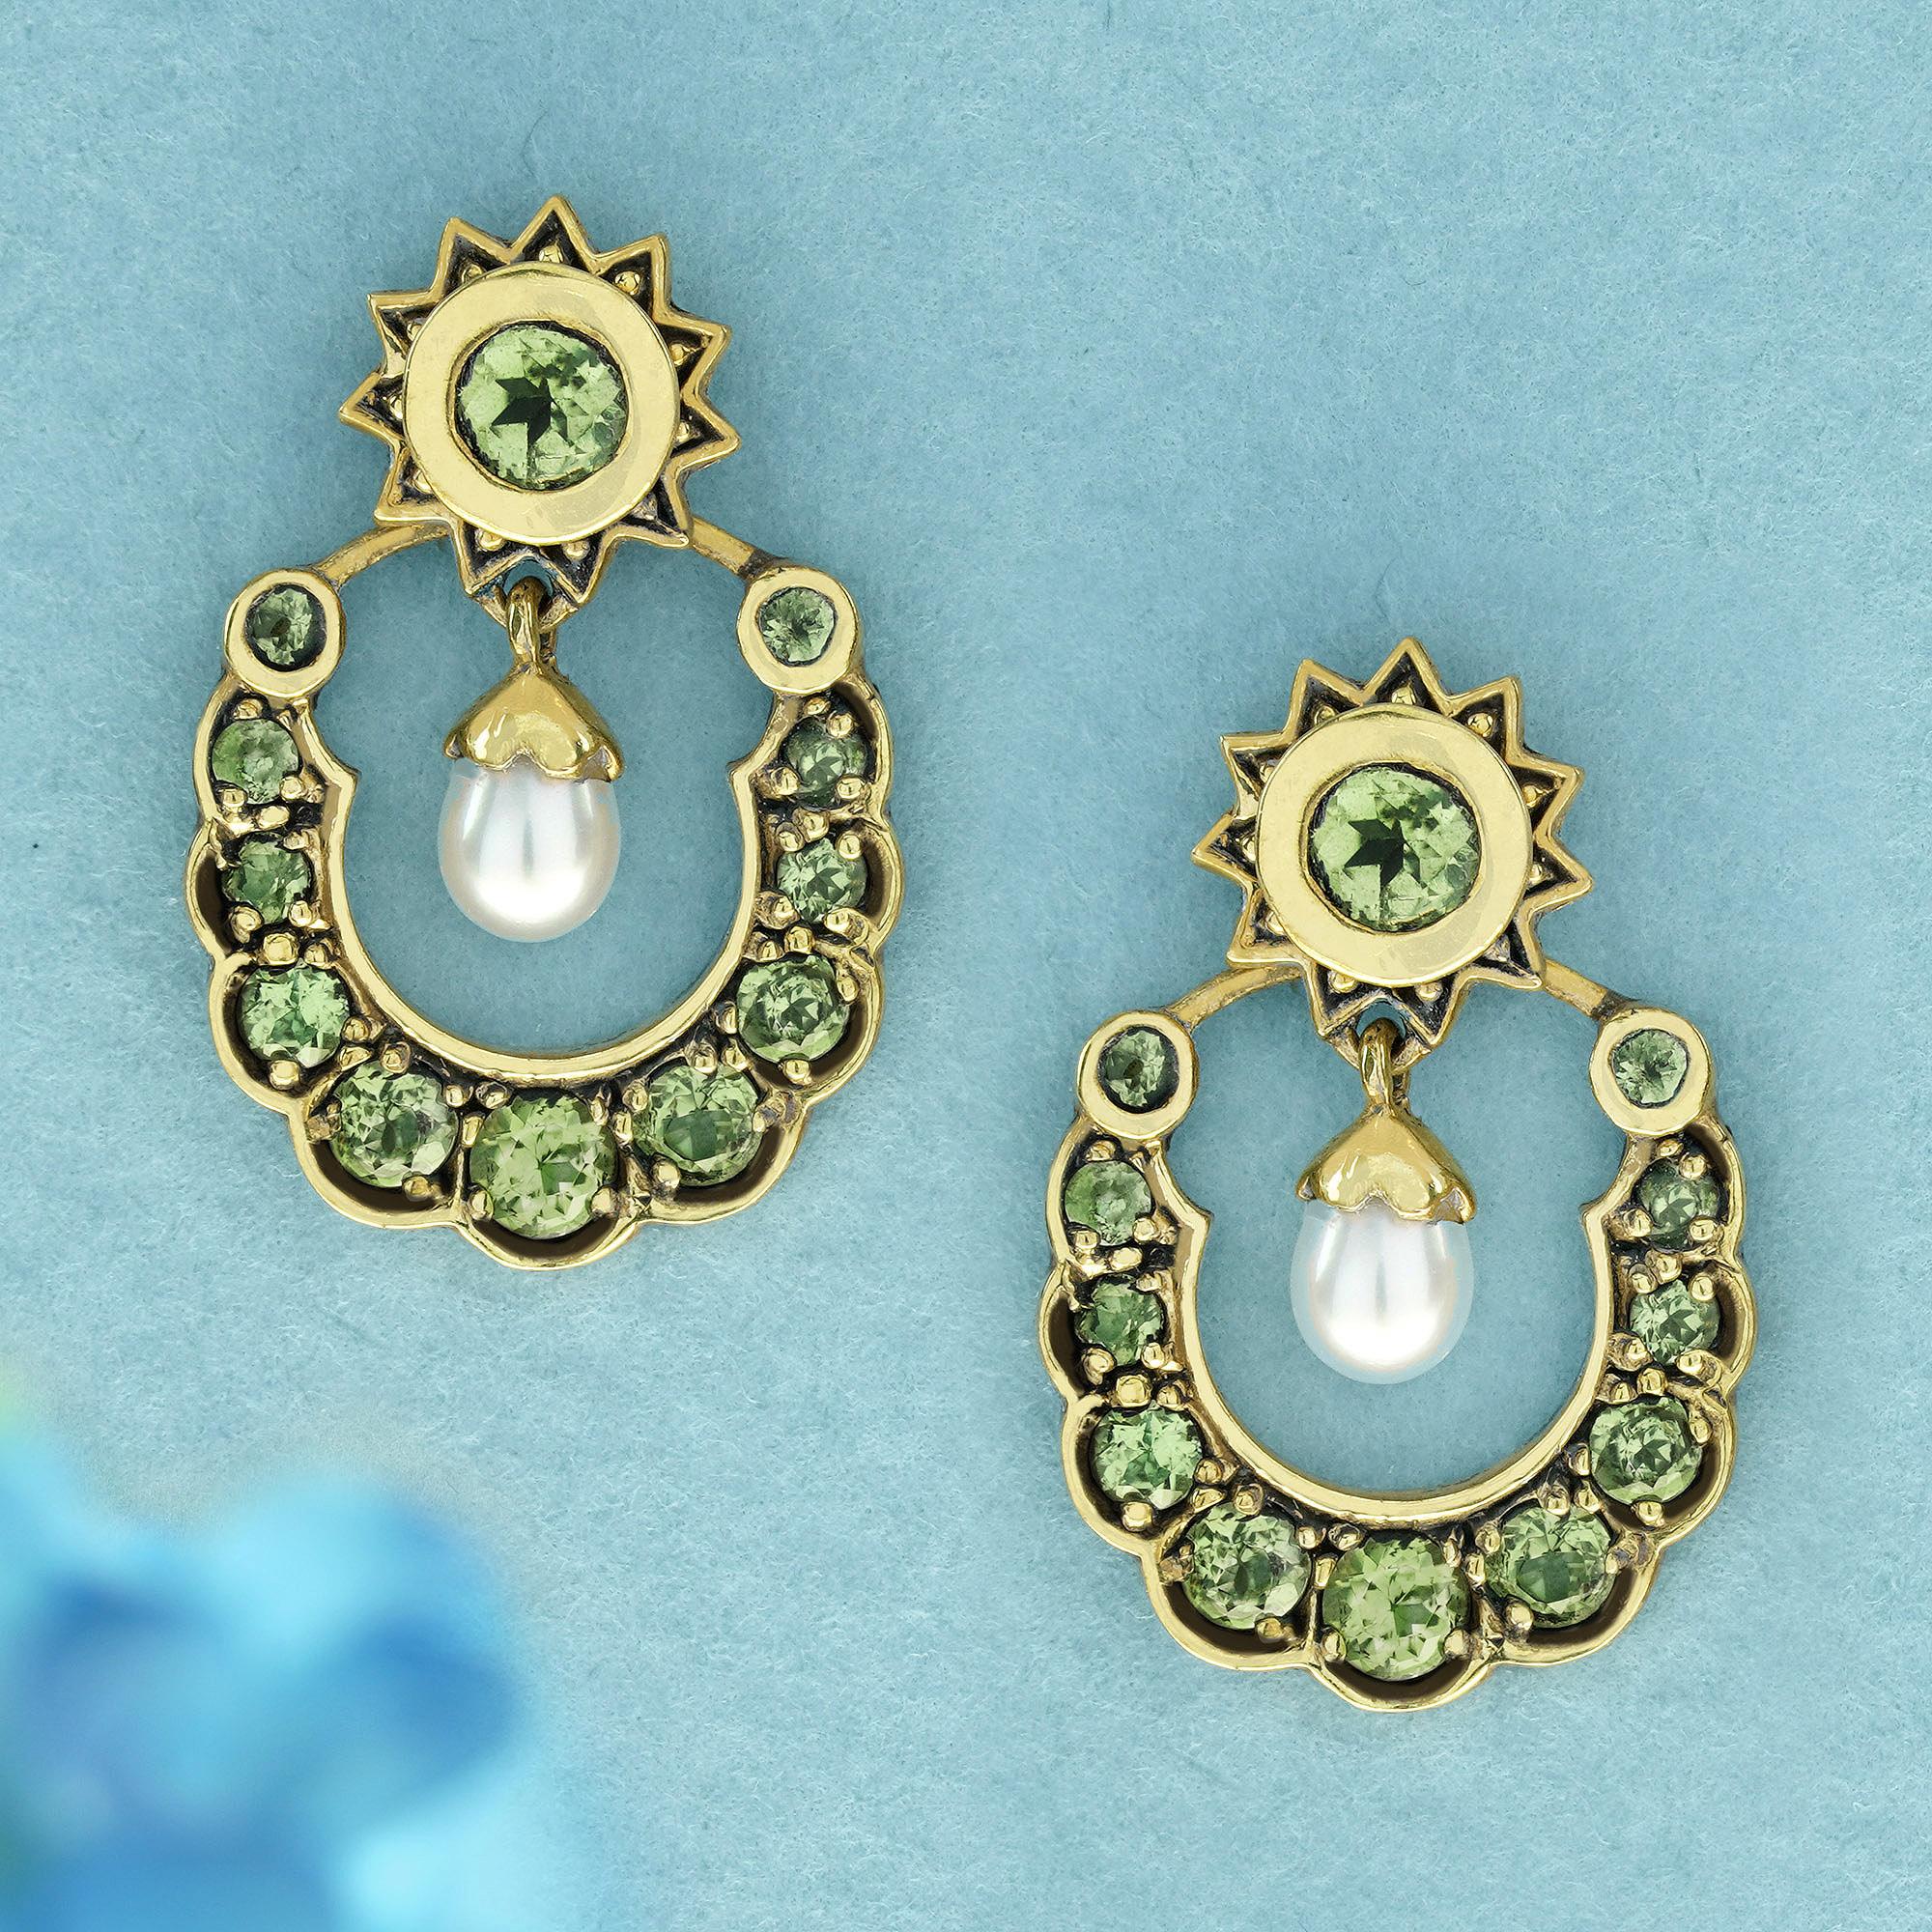  Diese anmutigen, von Vintage inspirierten Tropfenohrringe sind aus Gelbgold gefertigt und zeigen eine grüne, runde weiße Perle in auffälliger Trillion-Form, die das Herzstück der Stücke bildet. Um die Perlen herum sind runde lindgrüne Peridote